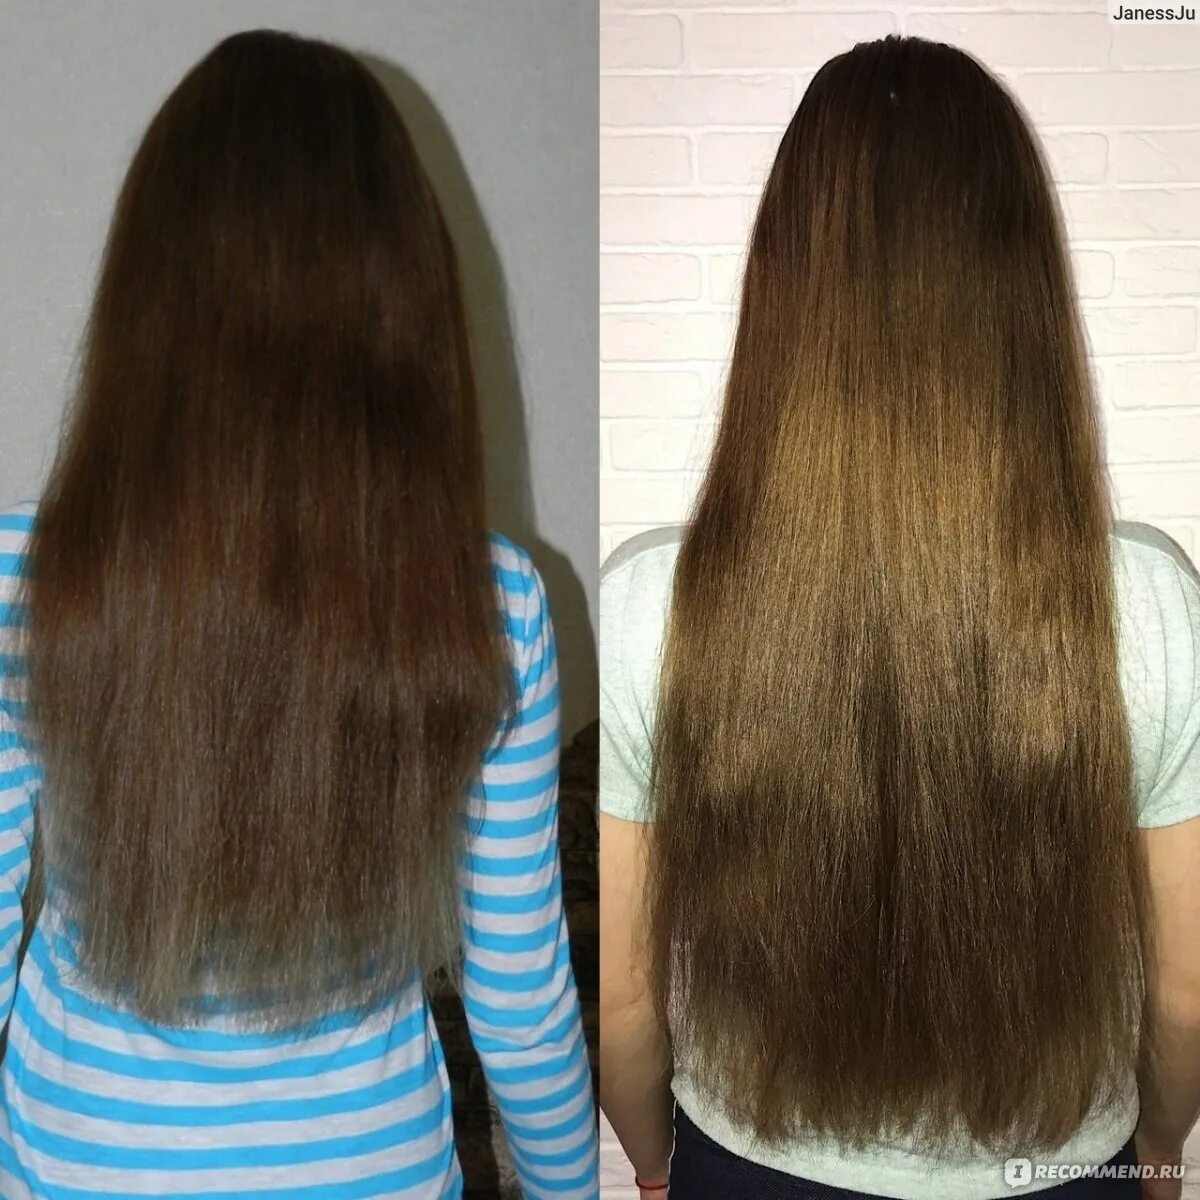 Волосы до после. Отращивание волос. Волосы отрасли до после. Отращивание волос до и после. Отрастить волосы за год